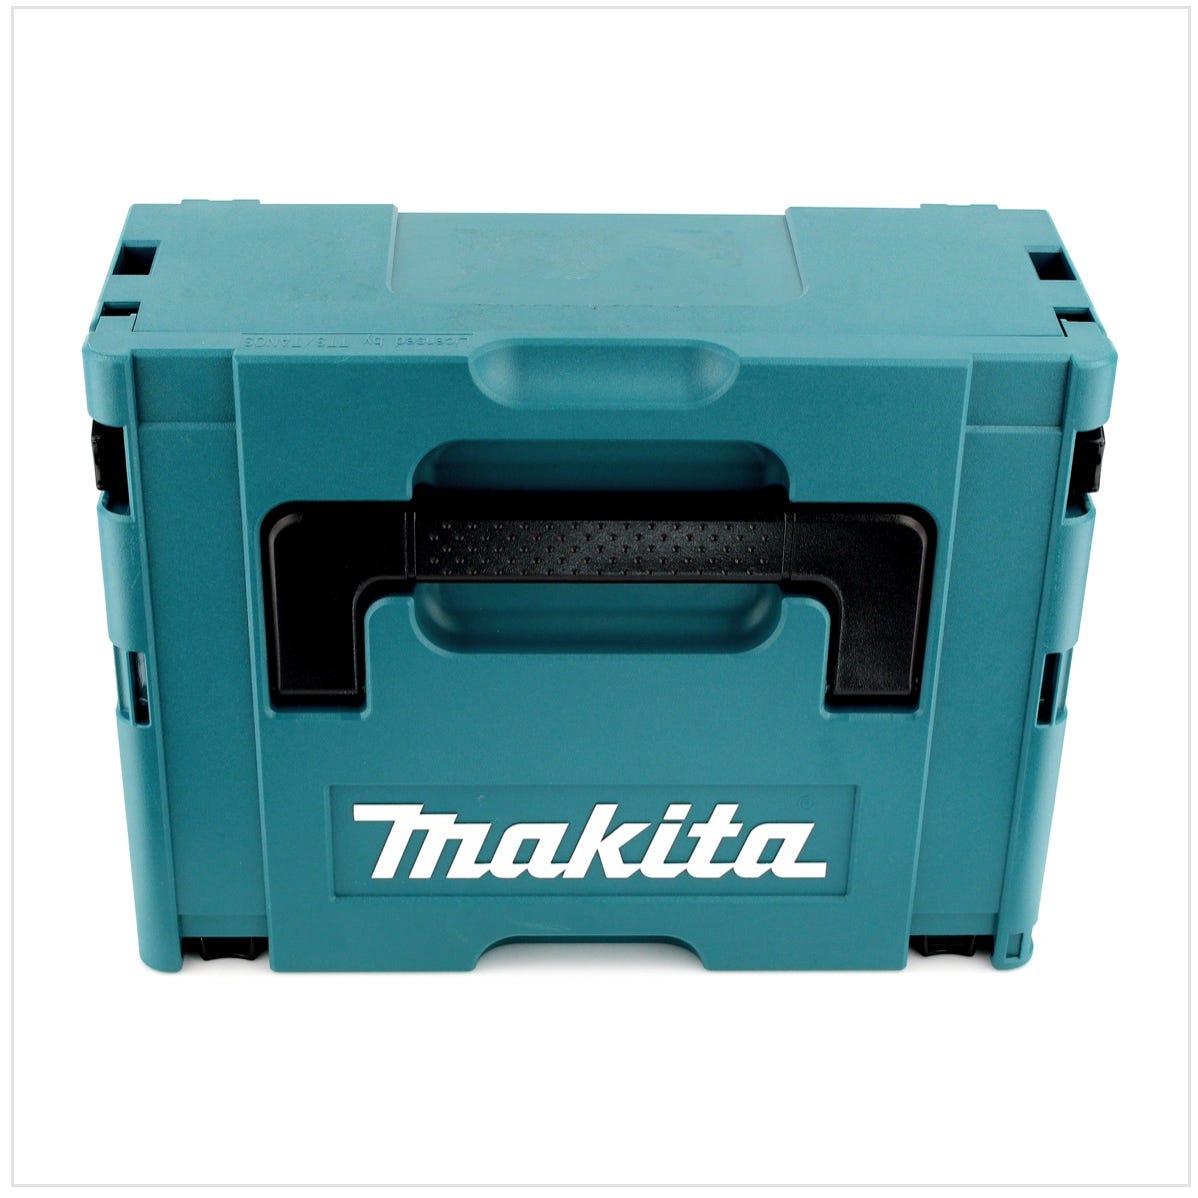 Makita DJV 180 RYJ Scie sauteuse sans fil 18V + 2x Batteries 1,5Ah + Chargeur + Coffret Makpac 0